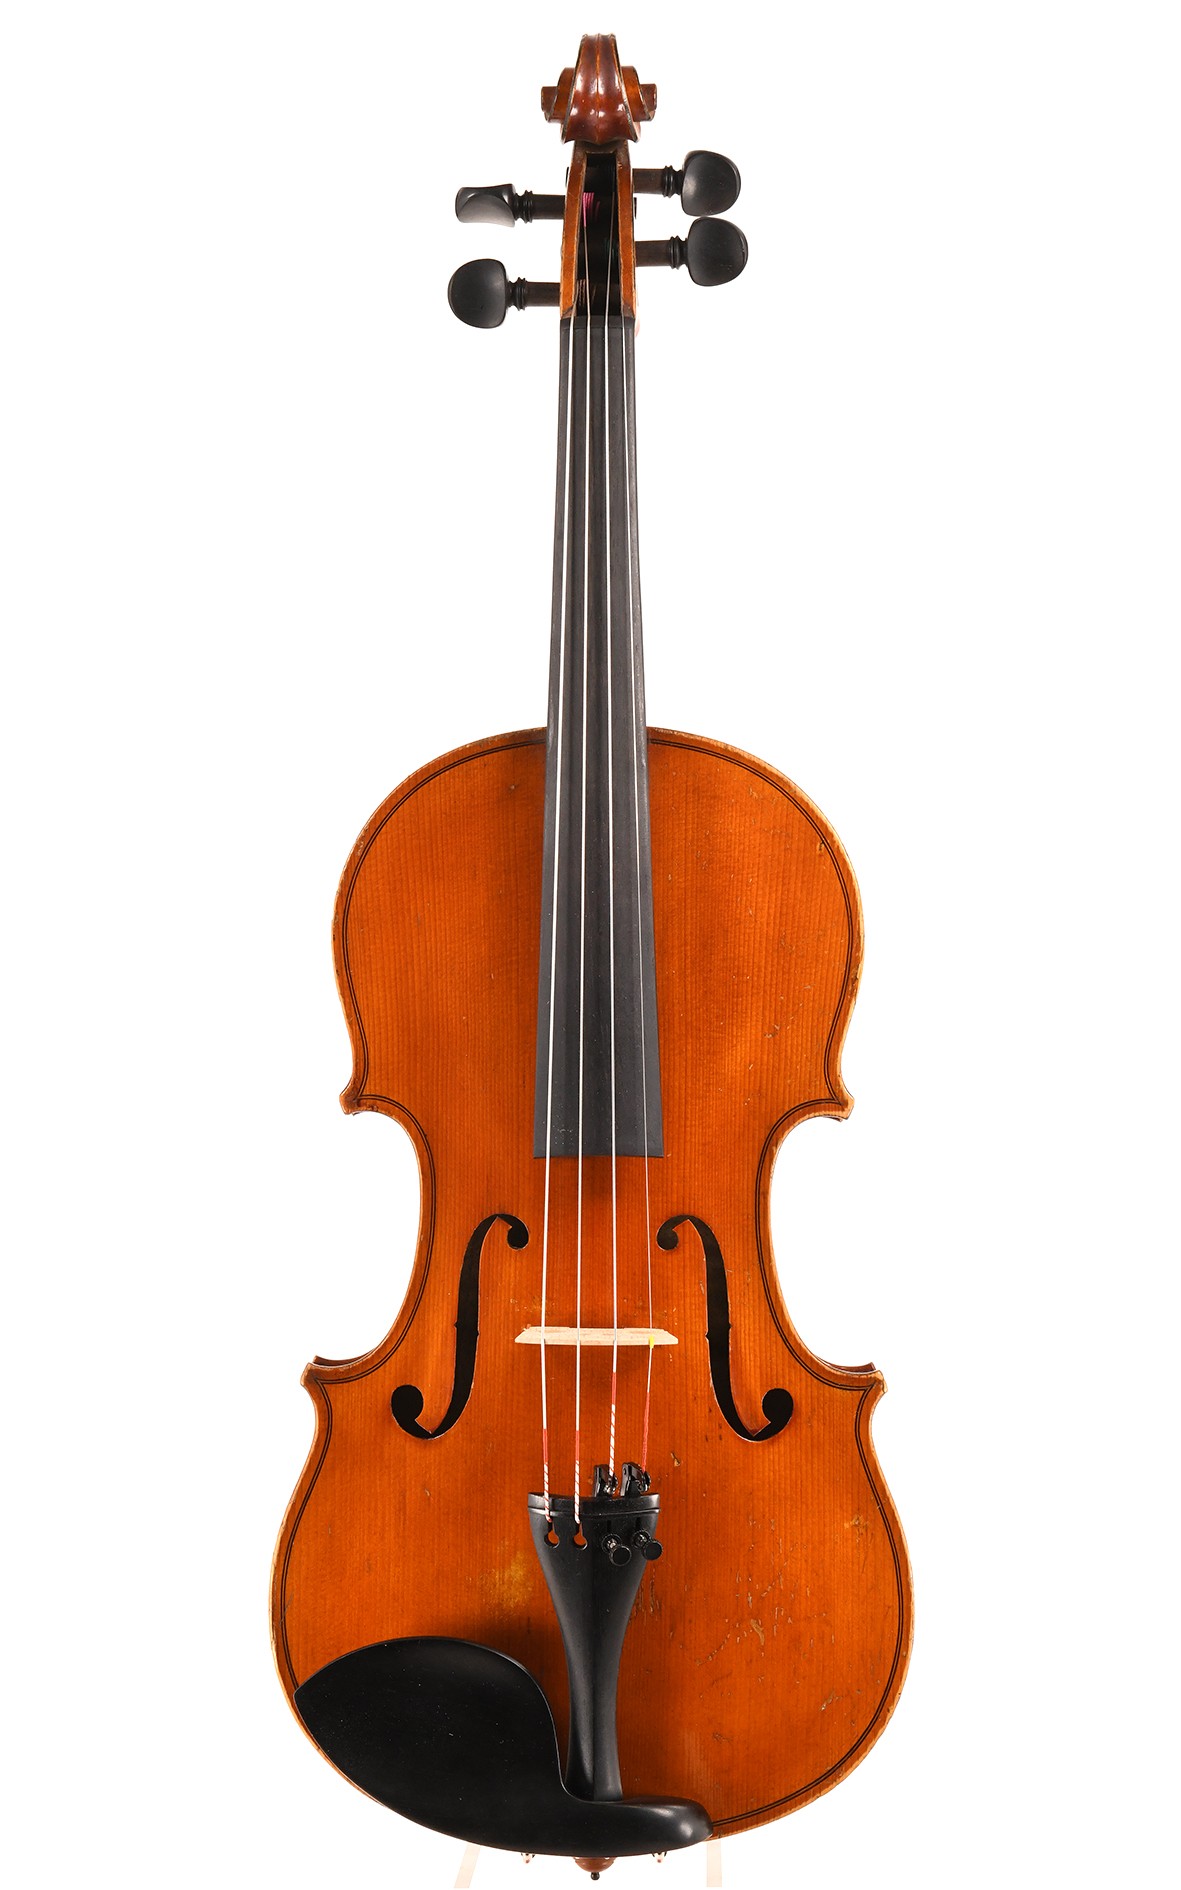 Beau violon français ancien de Mirecourt, vers 1930